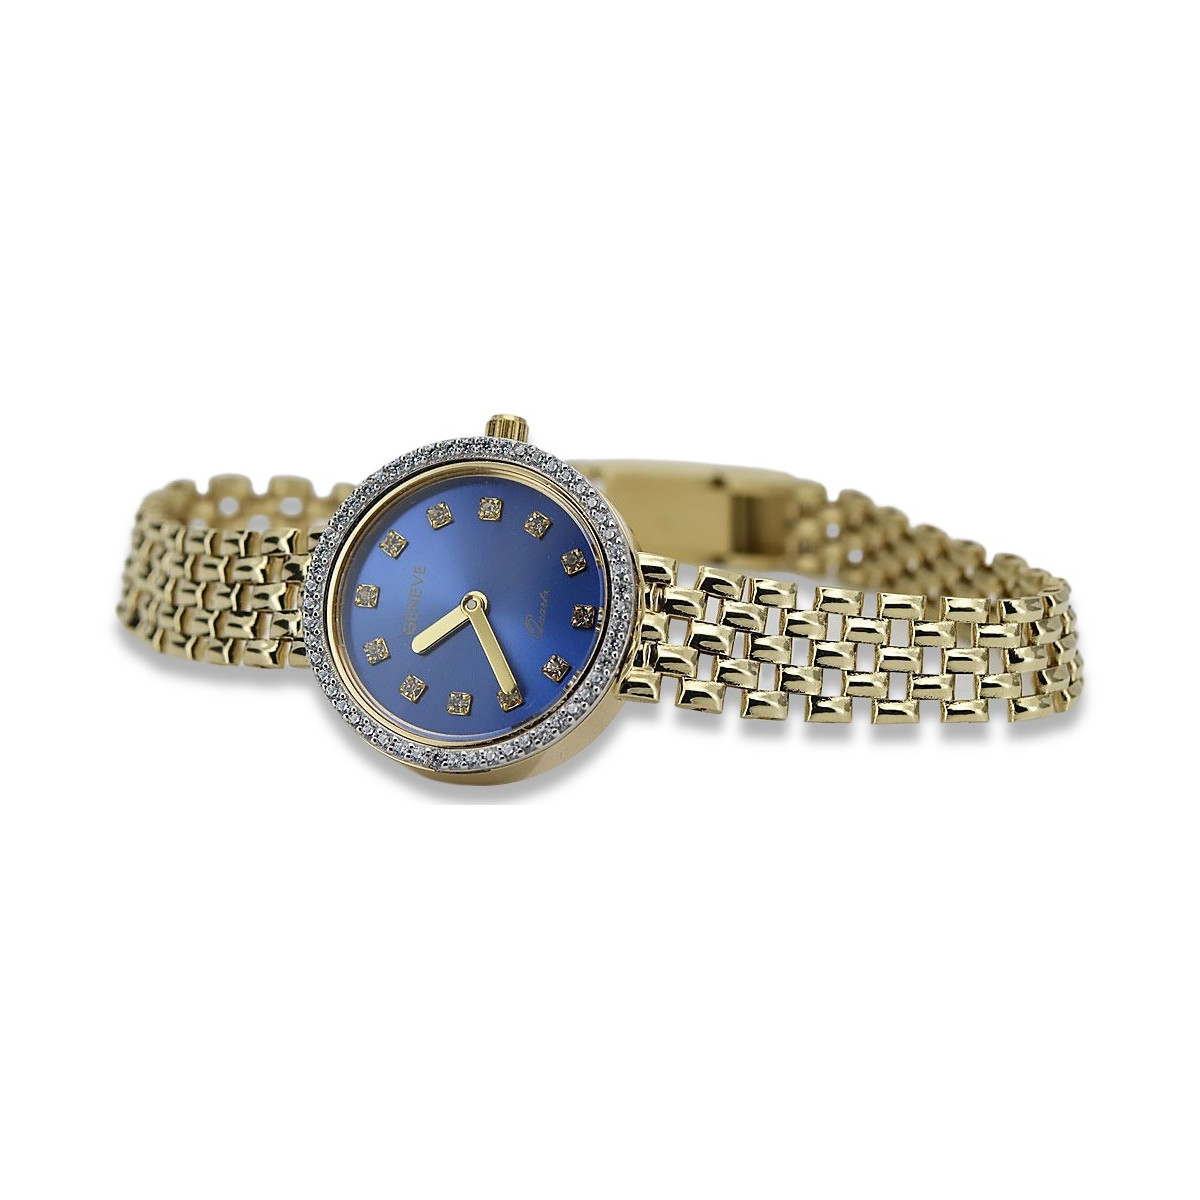 Prześliczny 14K 585 złoty damski zegarek Geneve lw101ydb